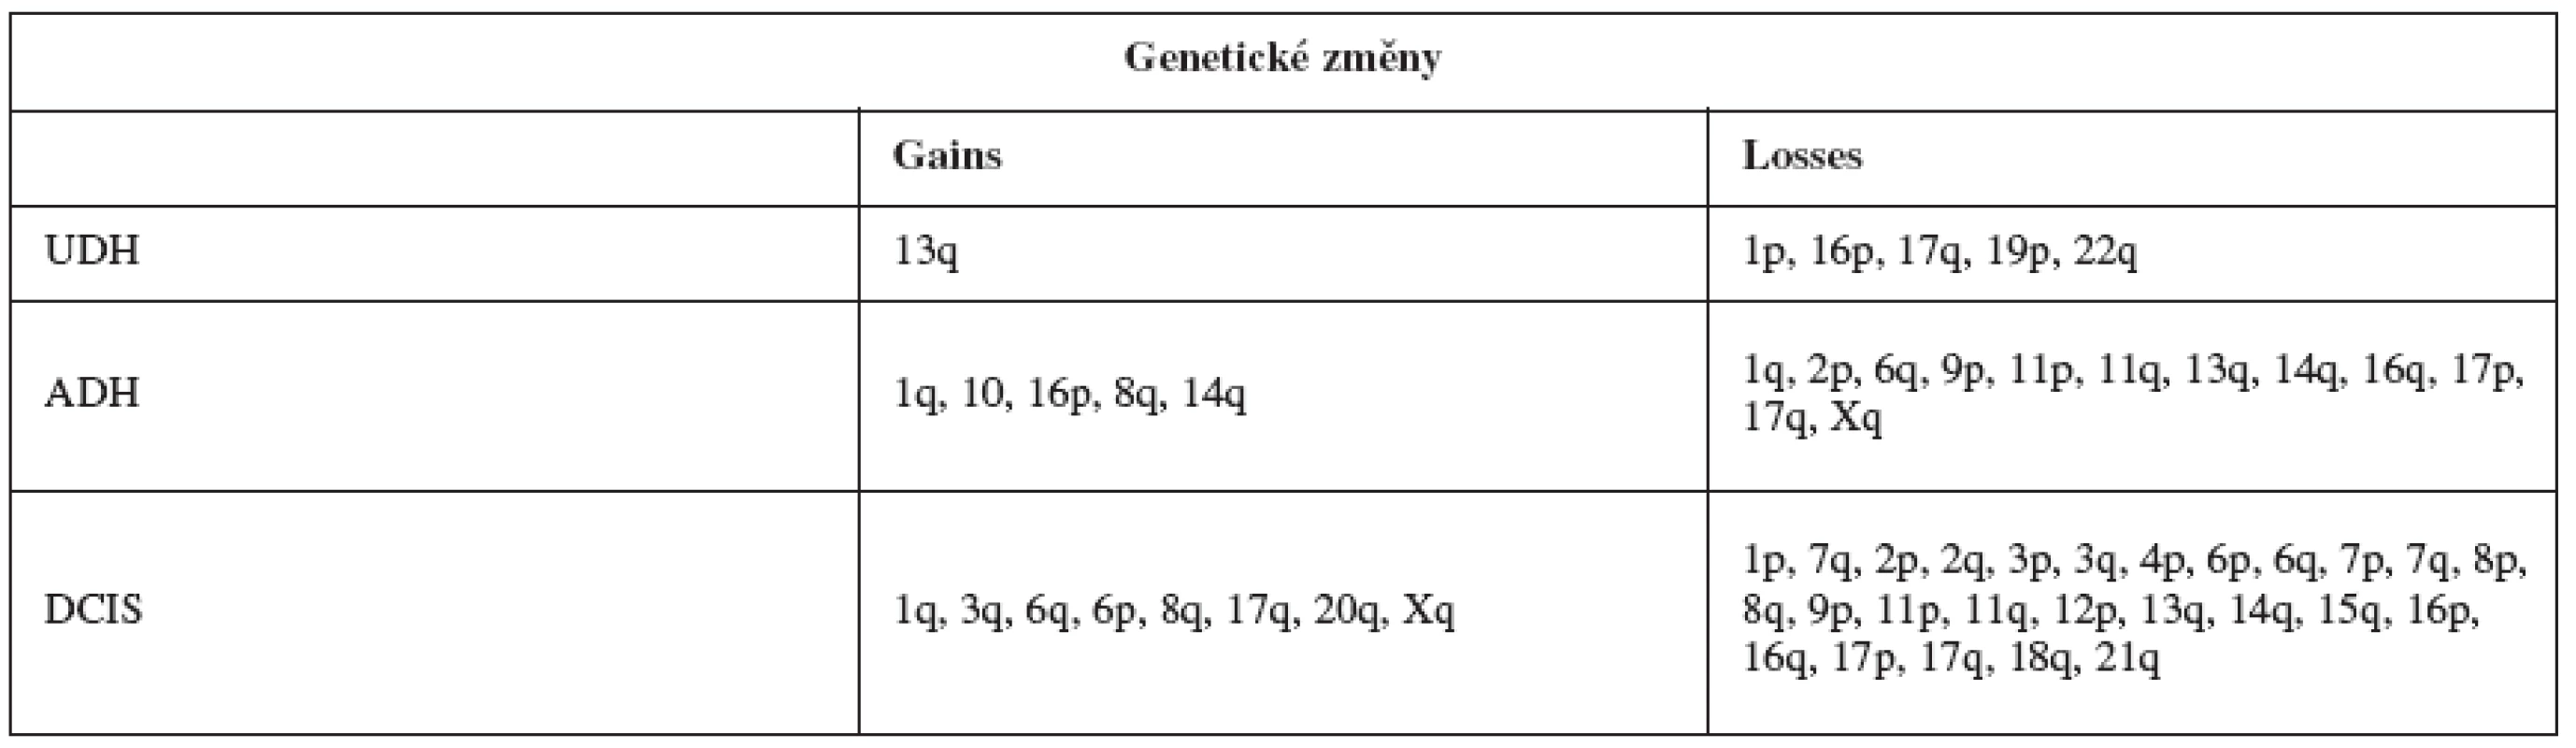 Analýza genetických změn metodami LOH (loss of heterozygosity) a CGH (comparative genomic hybridisation) pro jednotlivé prekurzory karcinomu prsu [34]